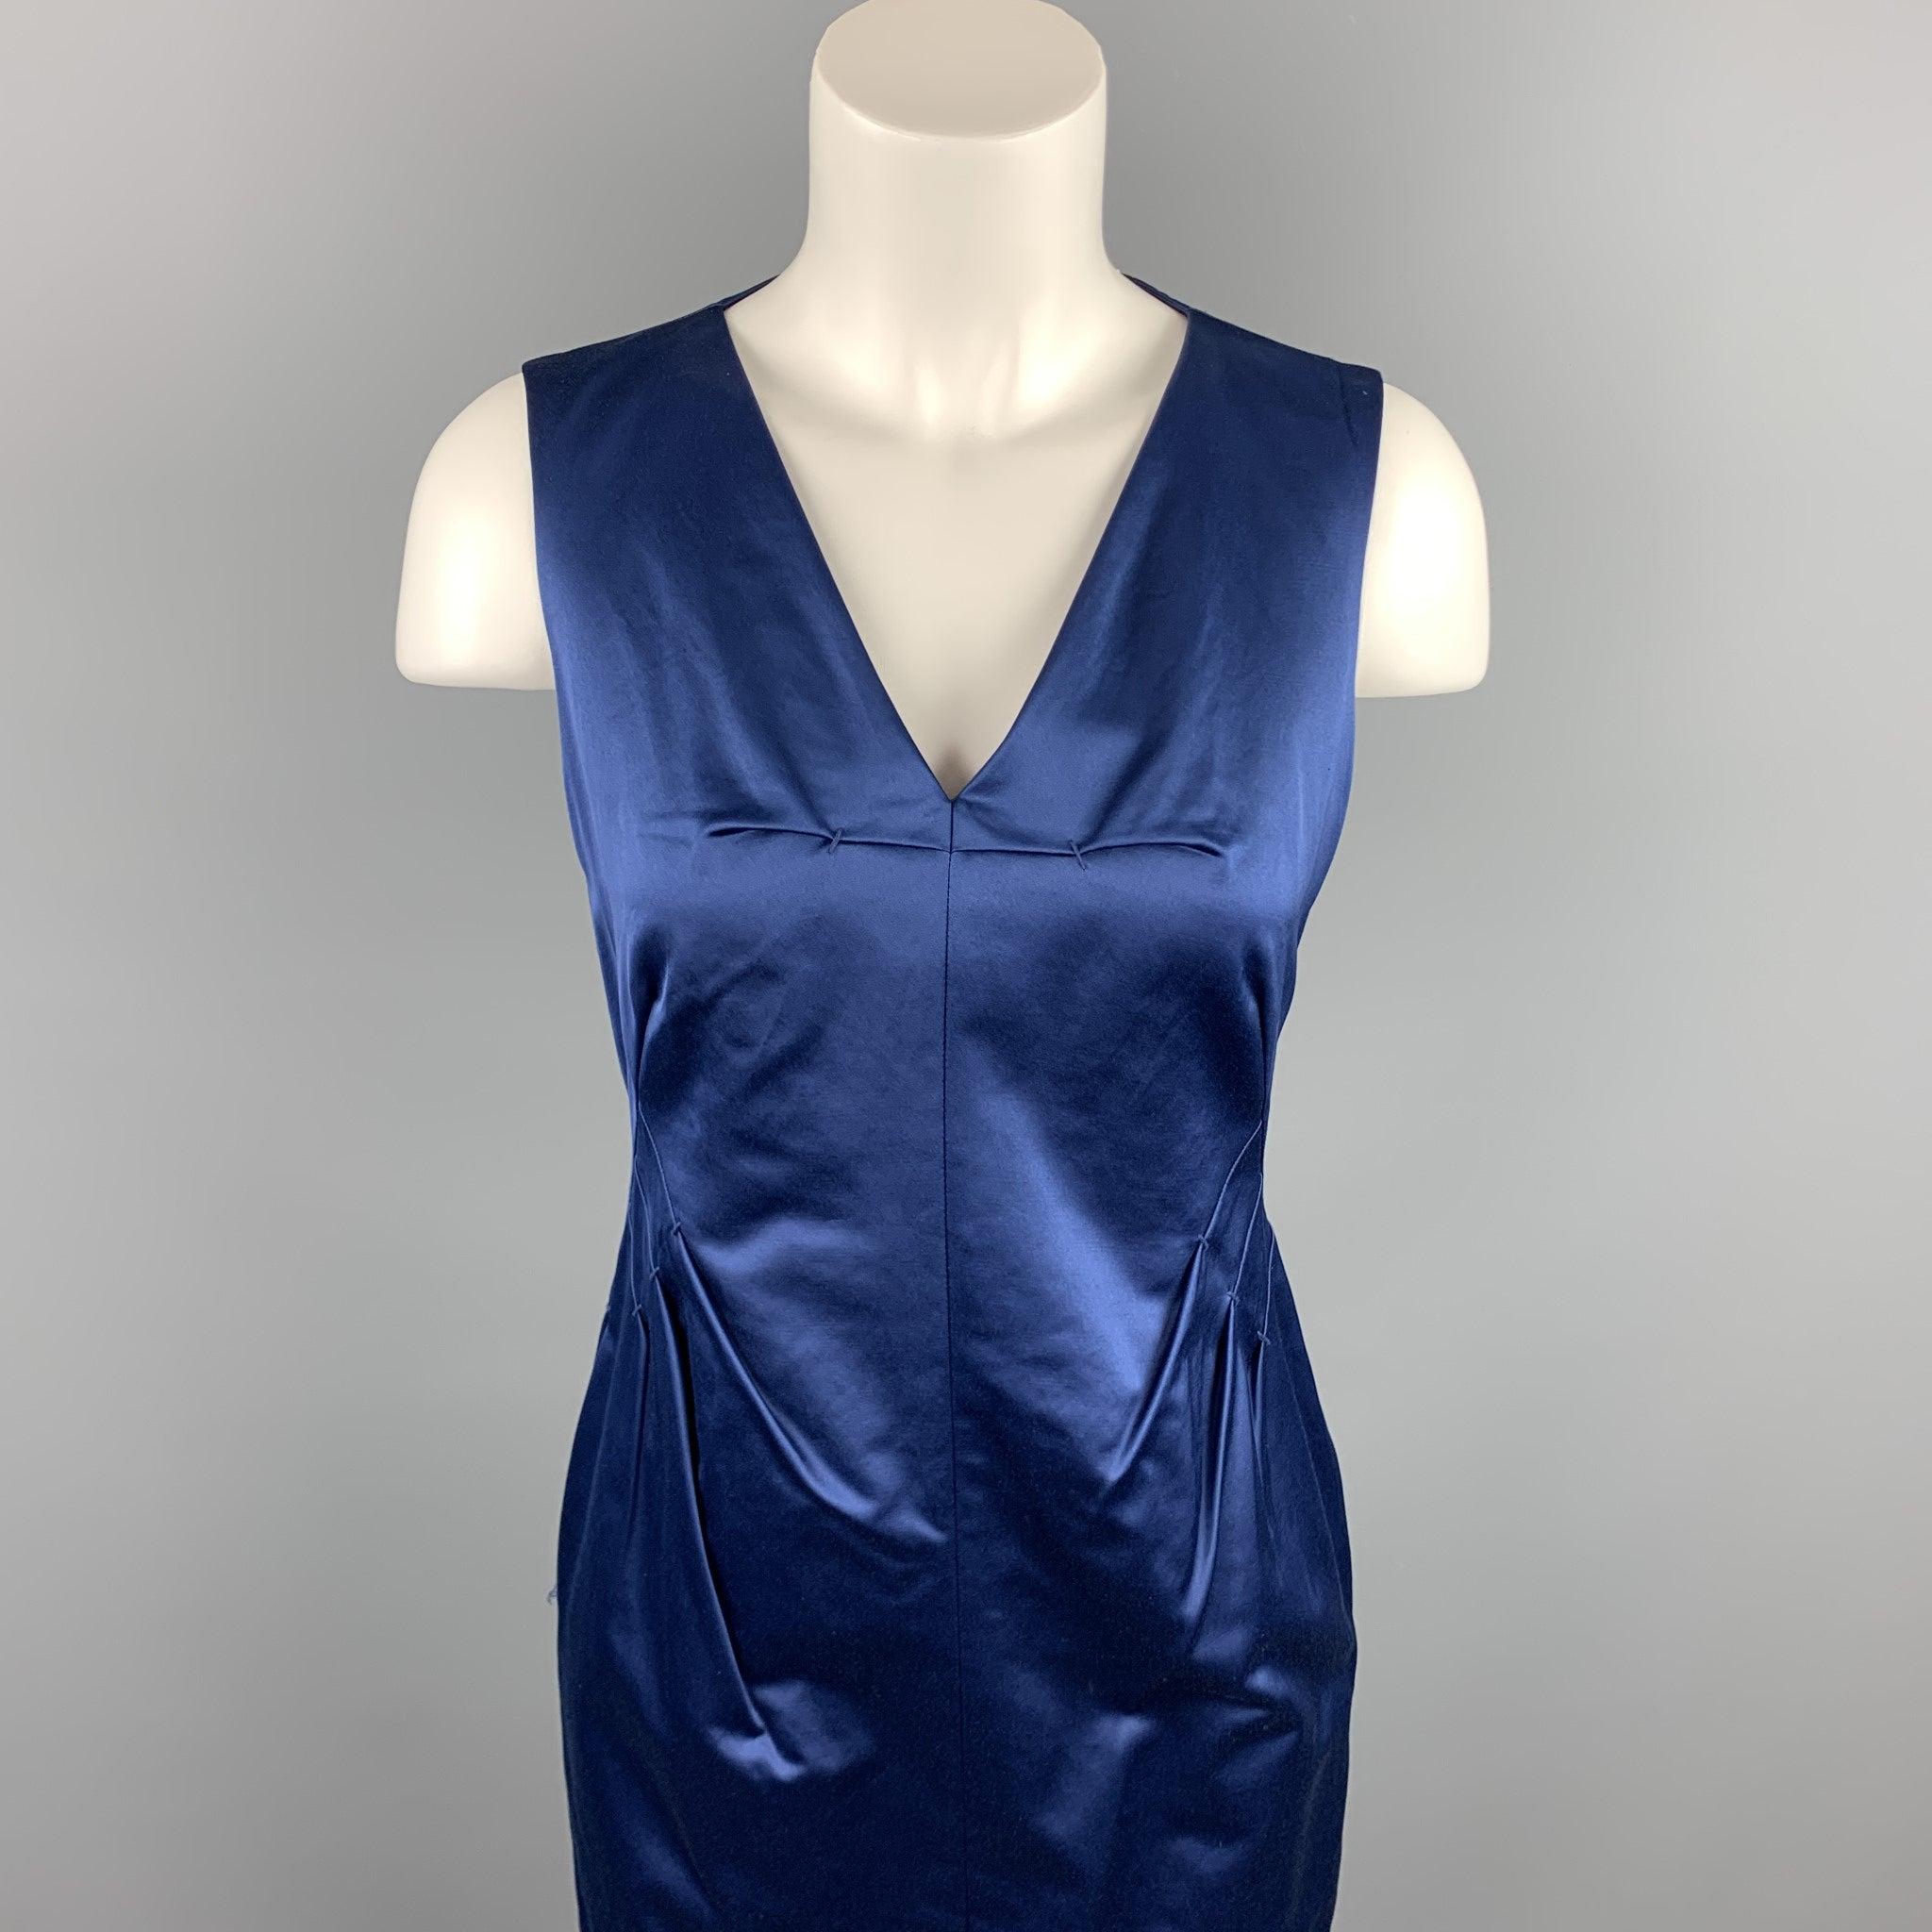 La robe de cocktail ROBERT RODRIGUEZ se présente dans un coton/polyester bleu avec un style fourreau, une encolure en V, des poches fendues, des détails plissés et une fermeture à glissière dans le dos.
Très bien
Etat d'occasion. 

Marqué :   